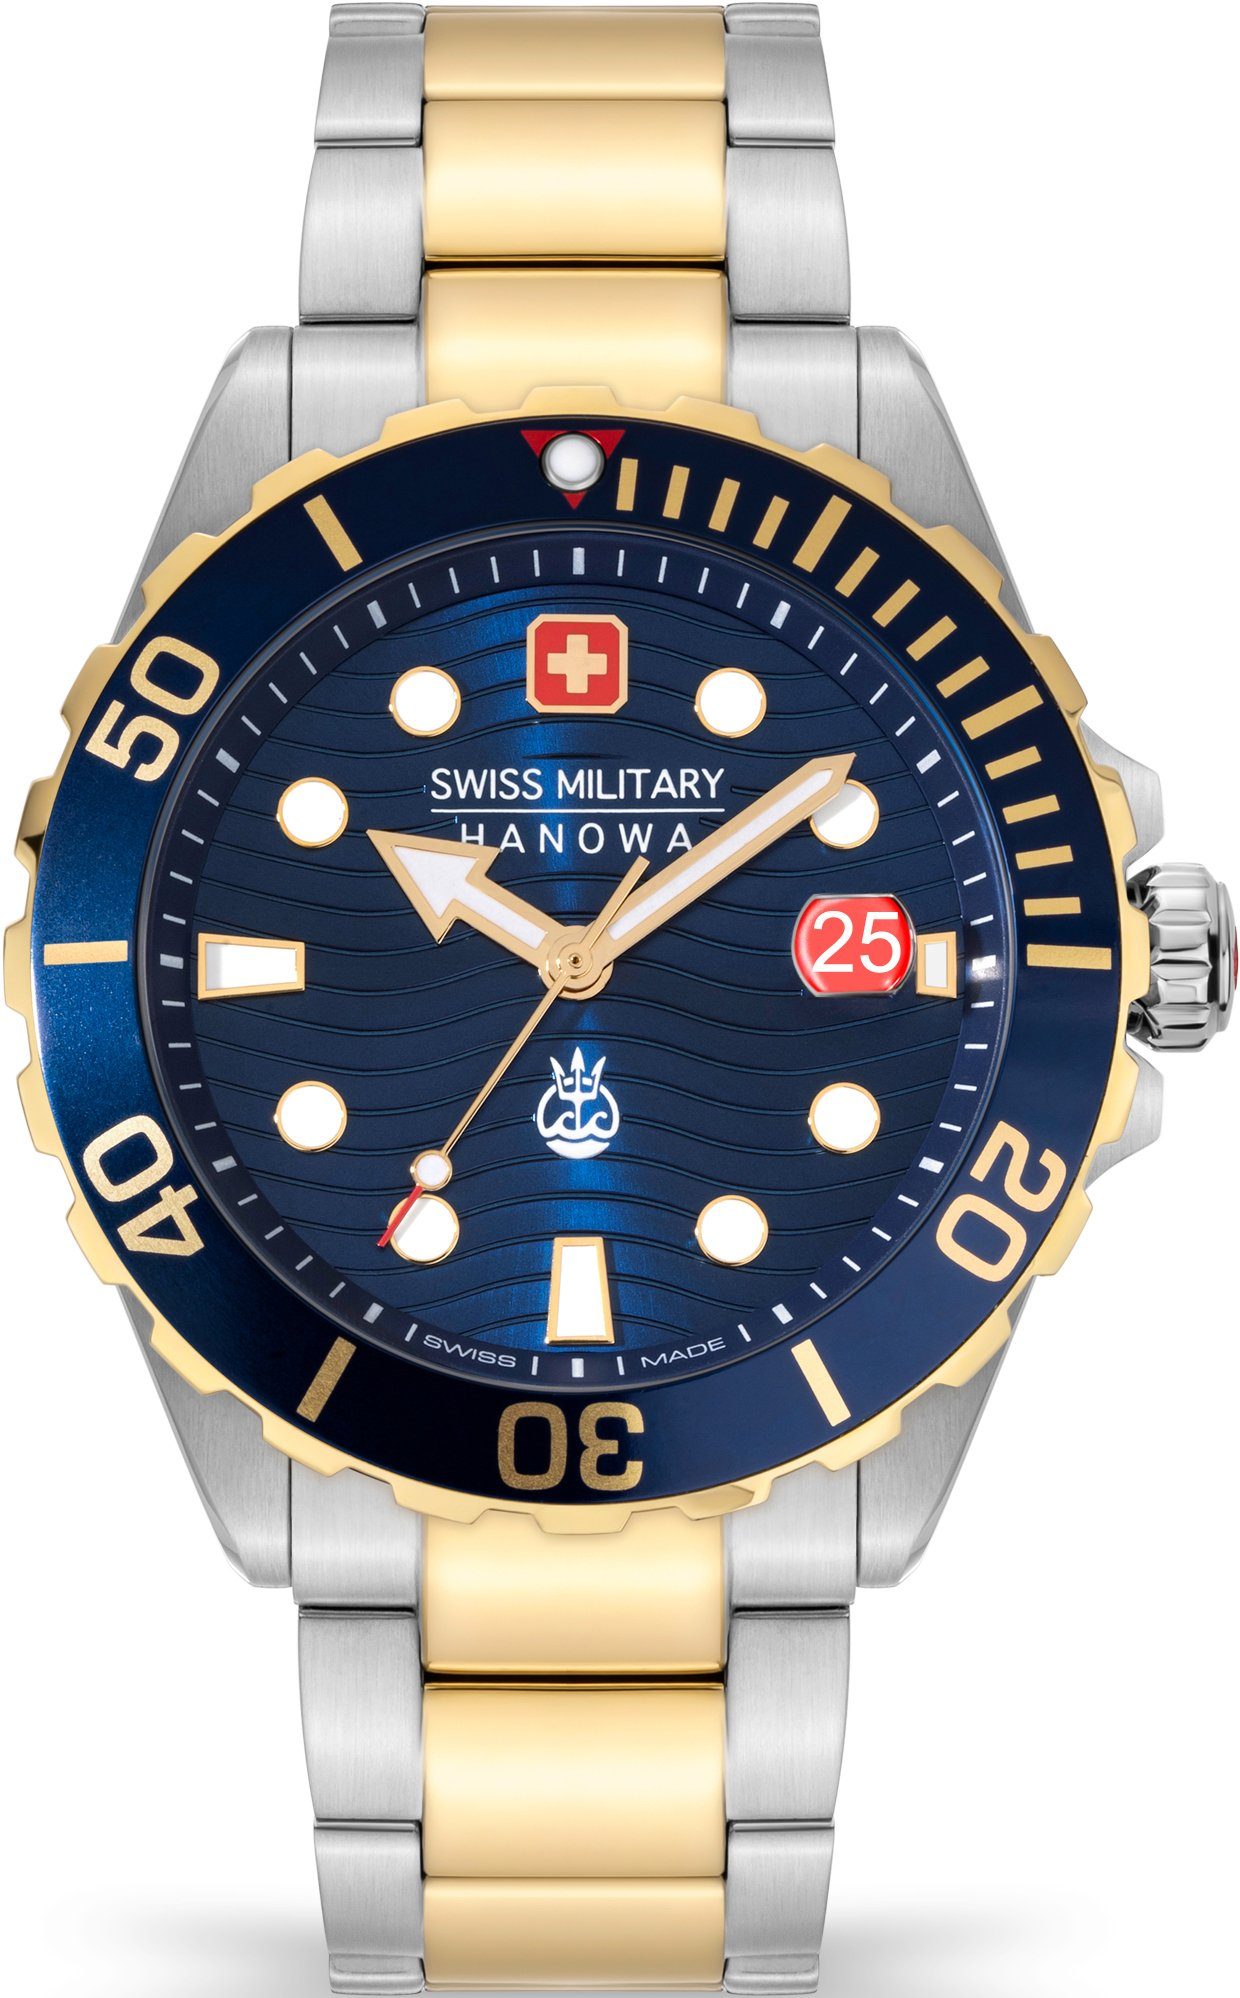 Swiss Military Hanowa Schweizer Uhr DIVER SMWGH2200360 II, OFFSHORE Blau